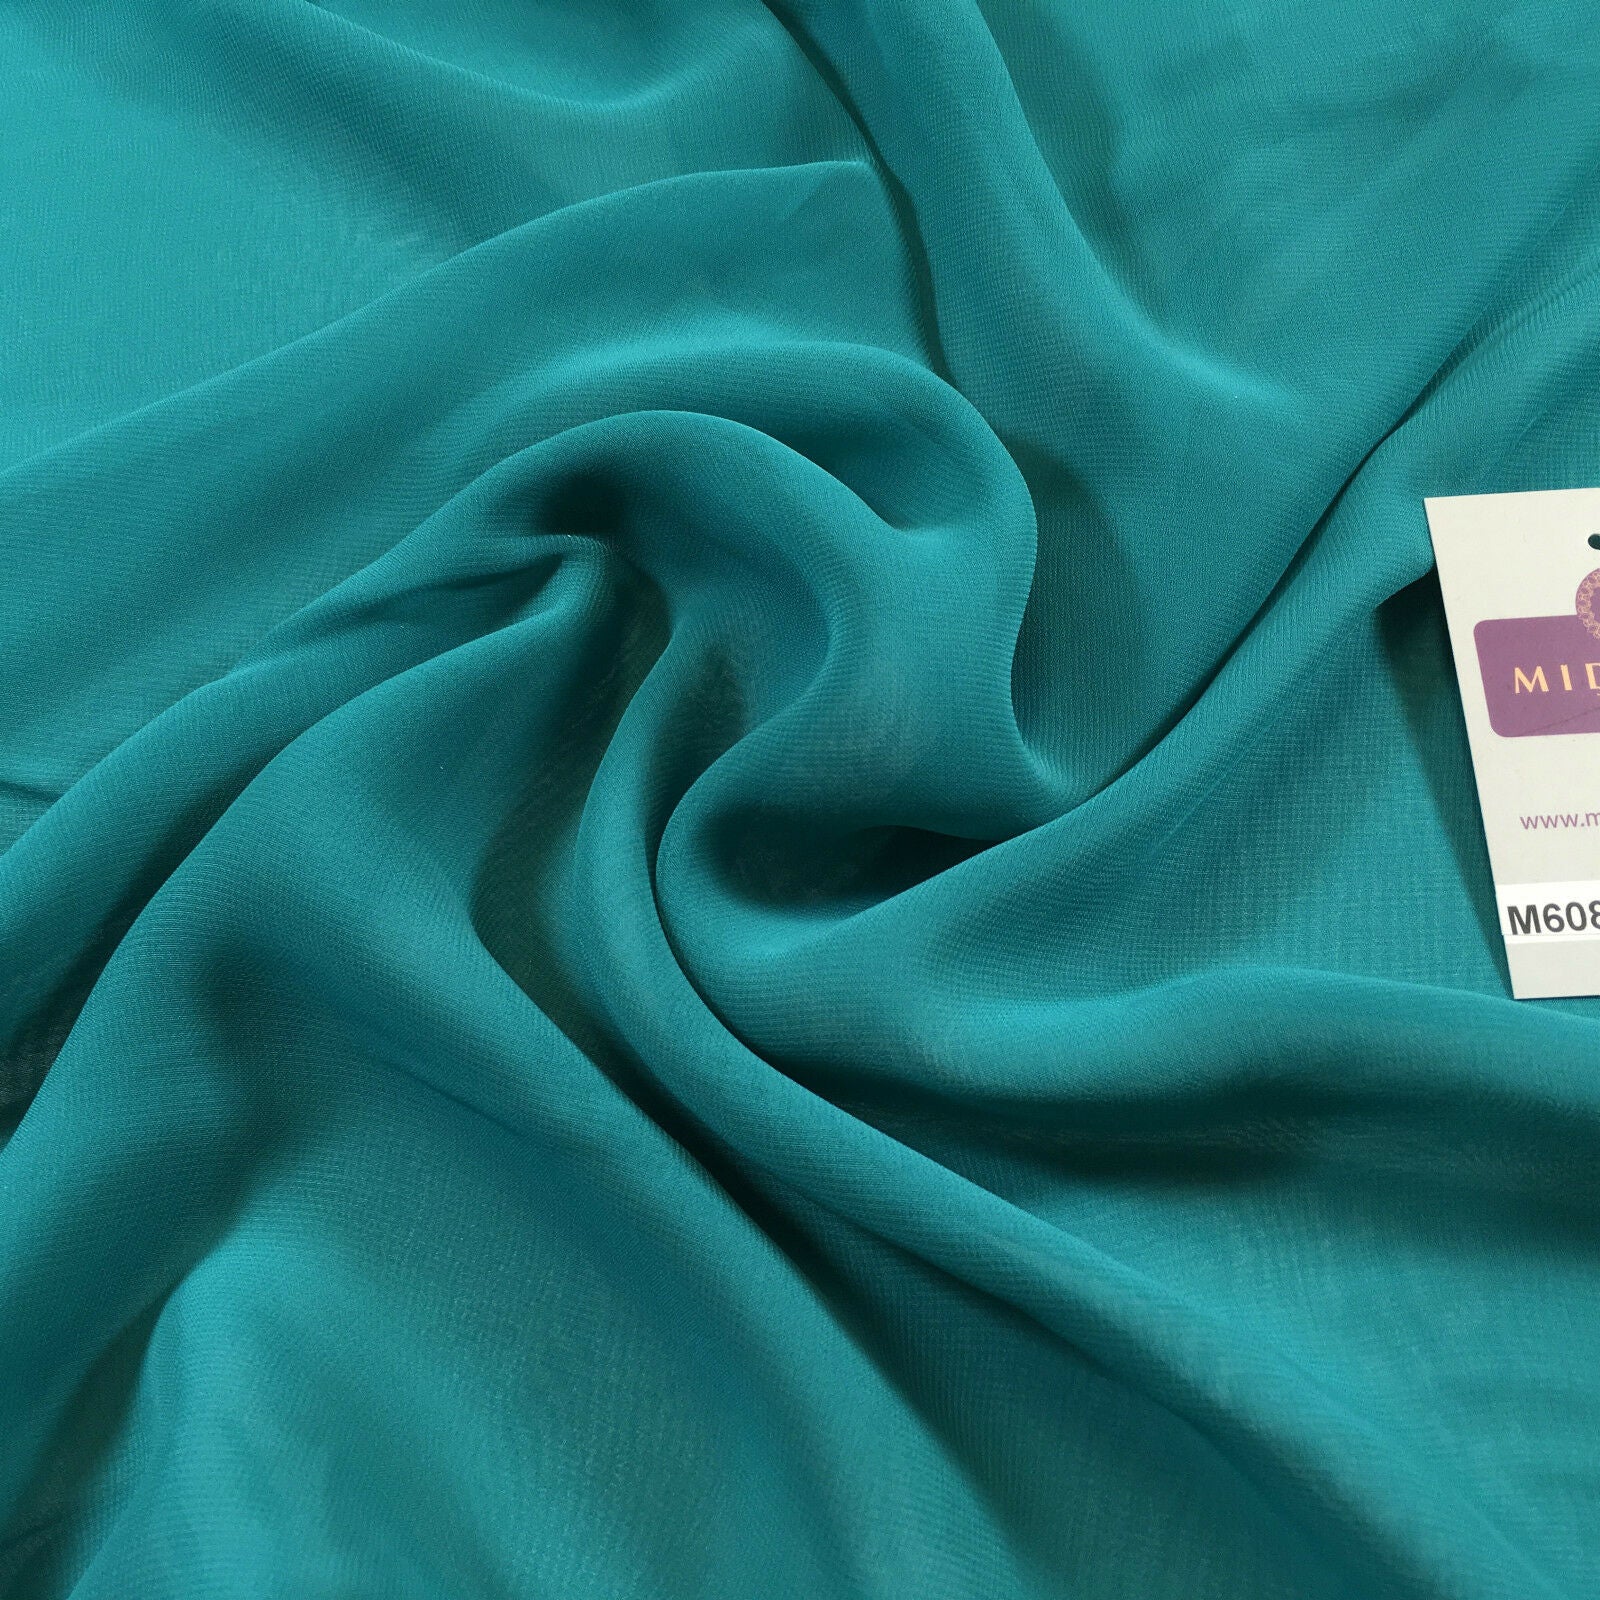 Hi-Multi Caress Chiffon Sheer Fabric Semi-Transparent 42" M608 Mtex